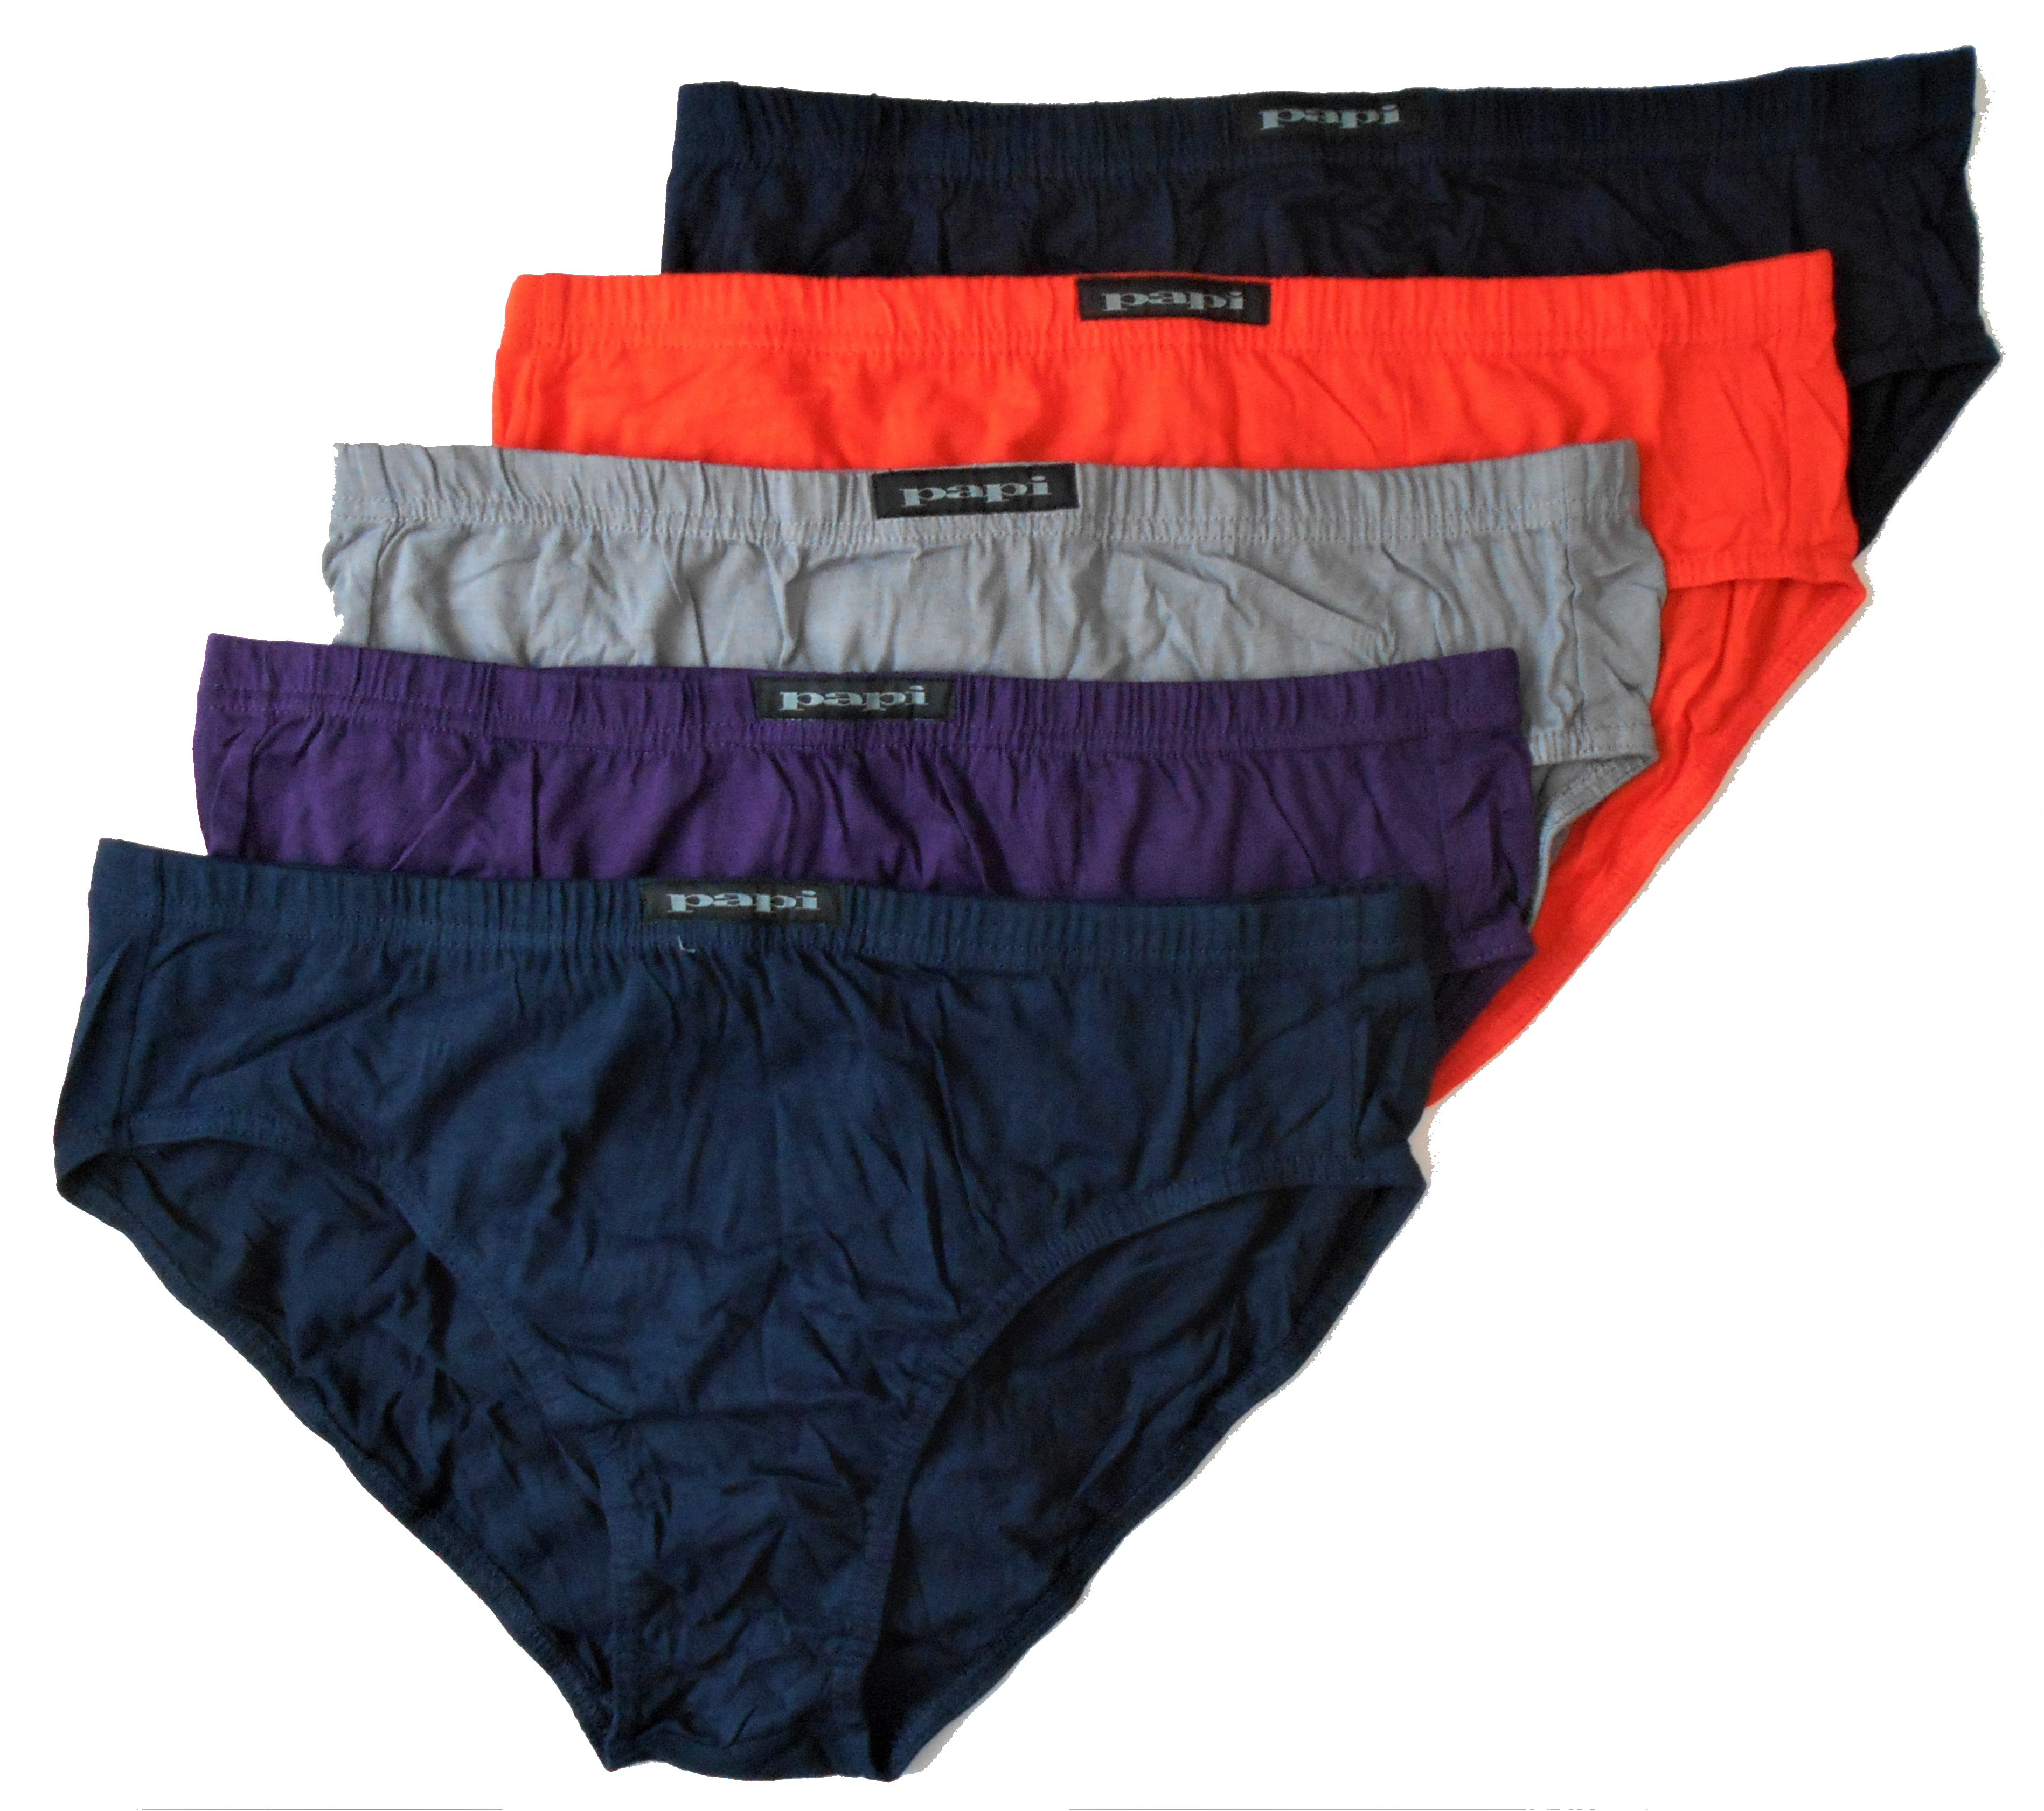 Papi underwear sale